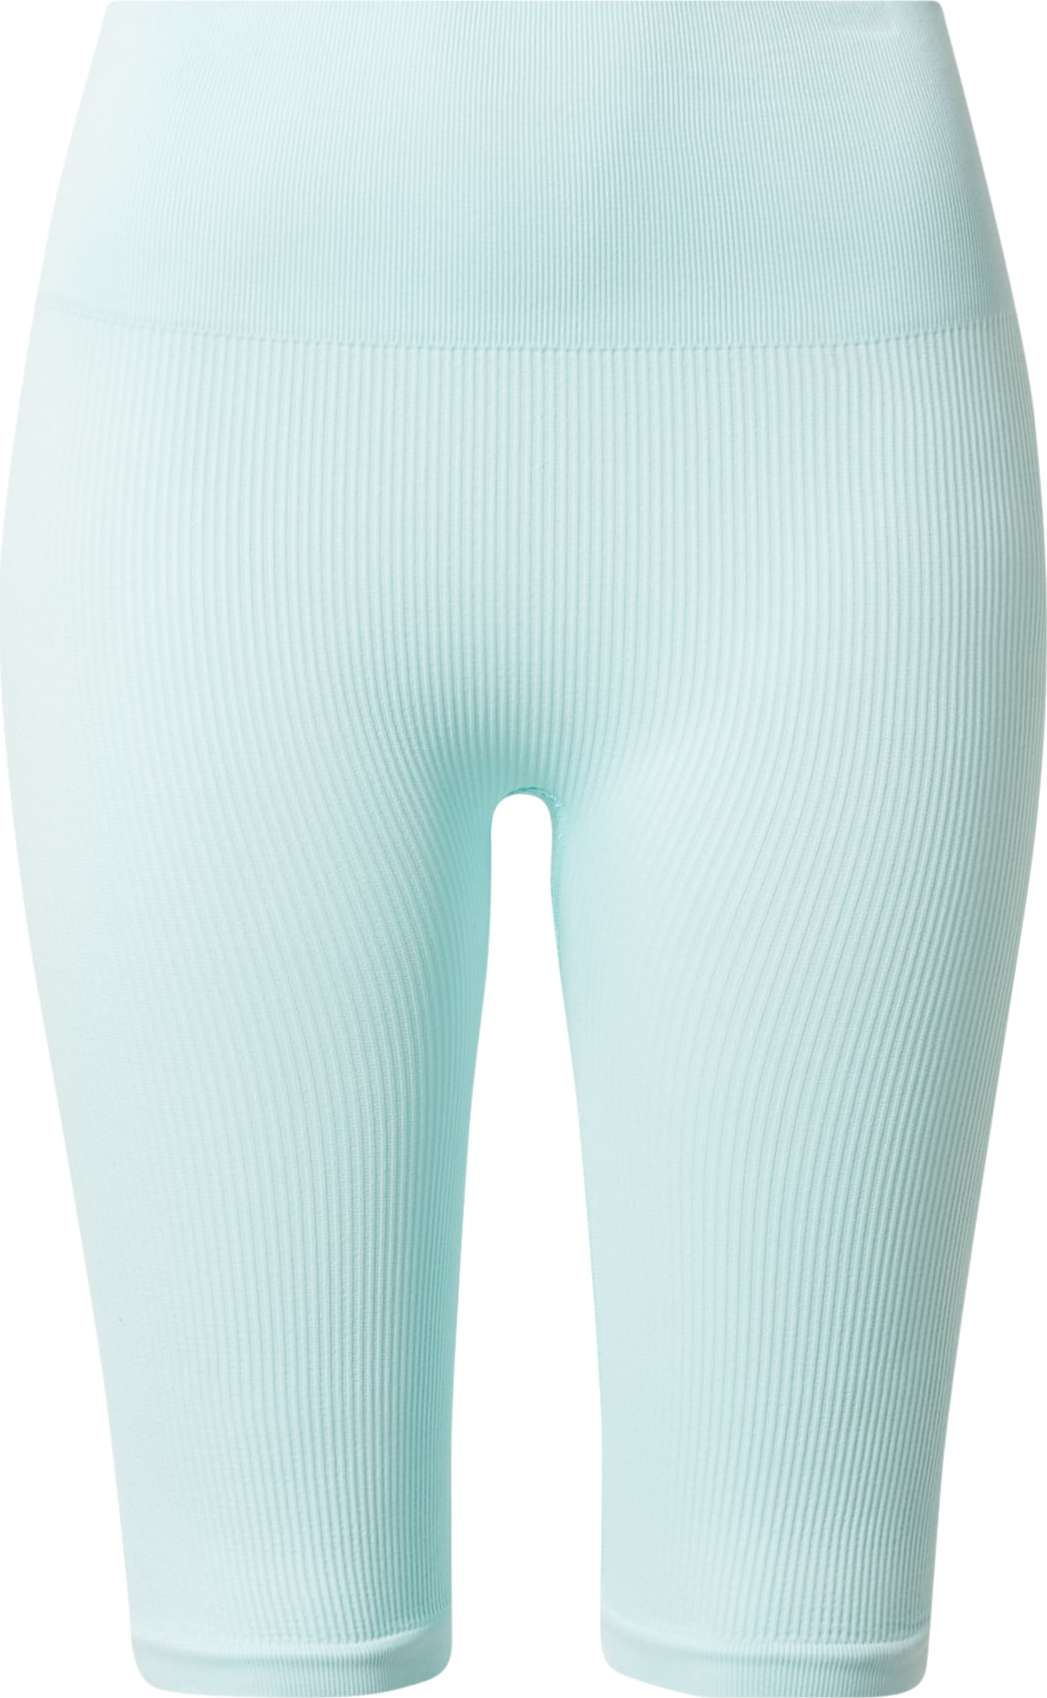 The Jogg Concept Kalhoty mátová